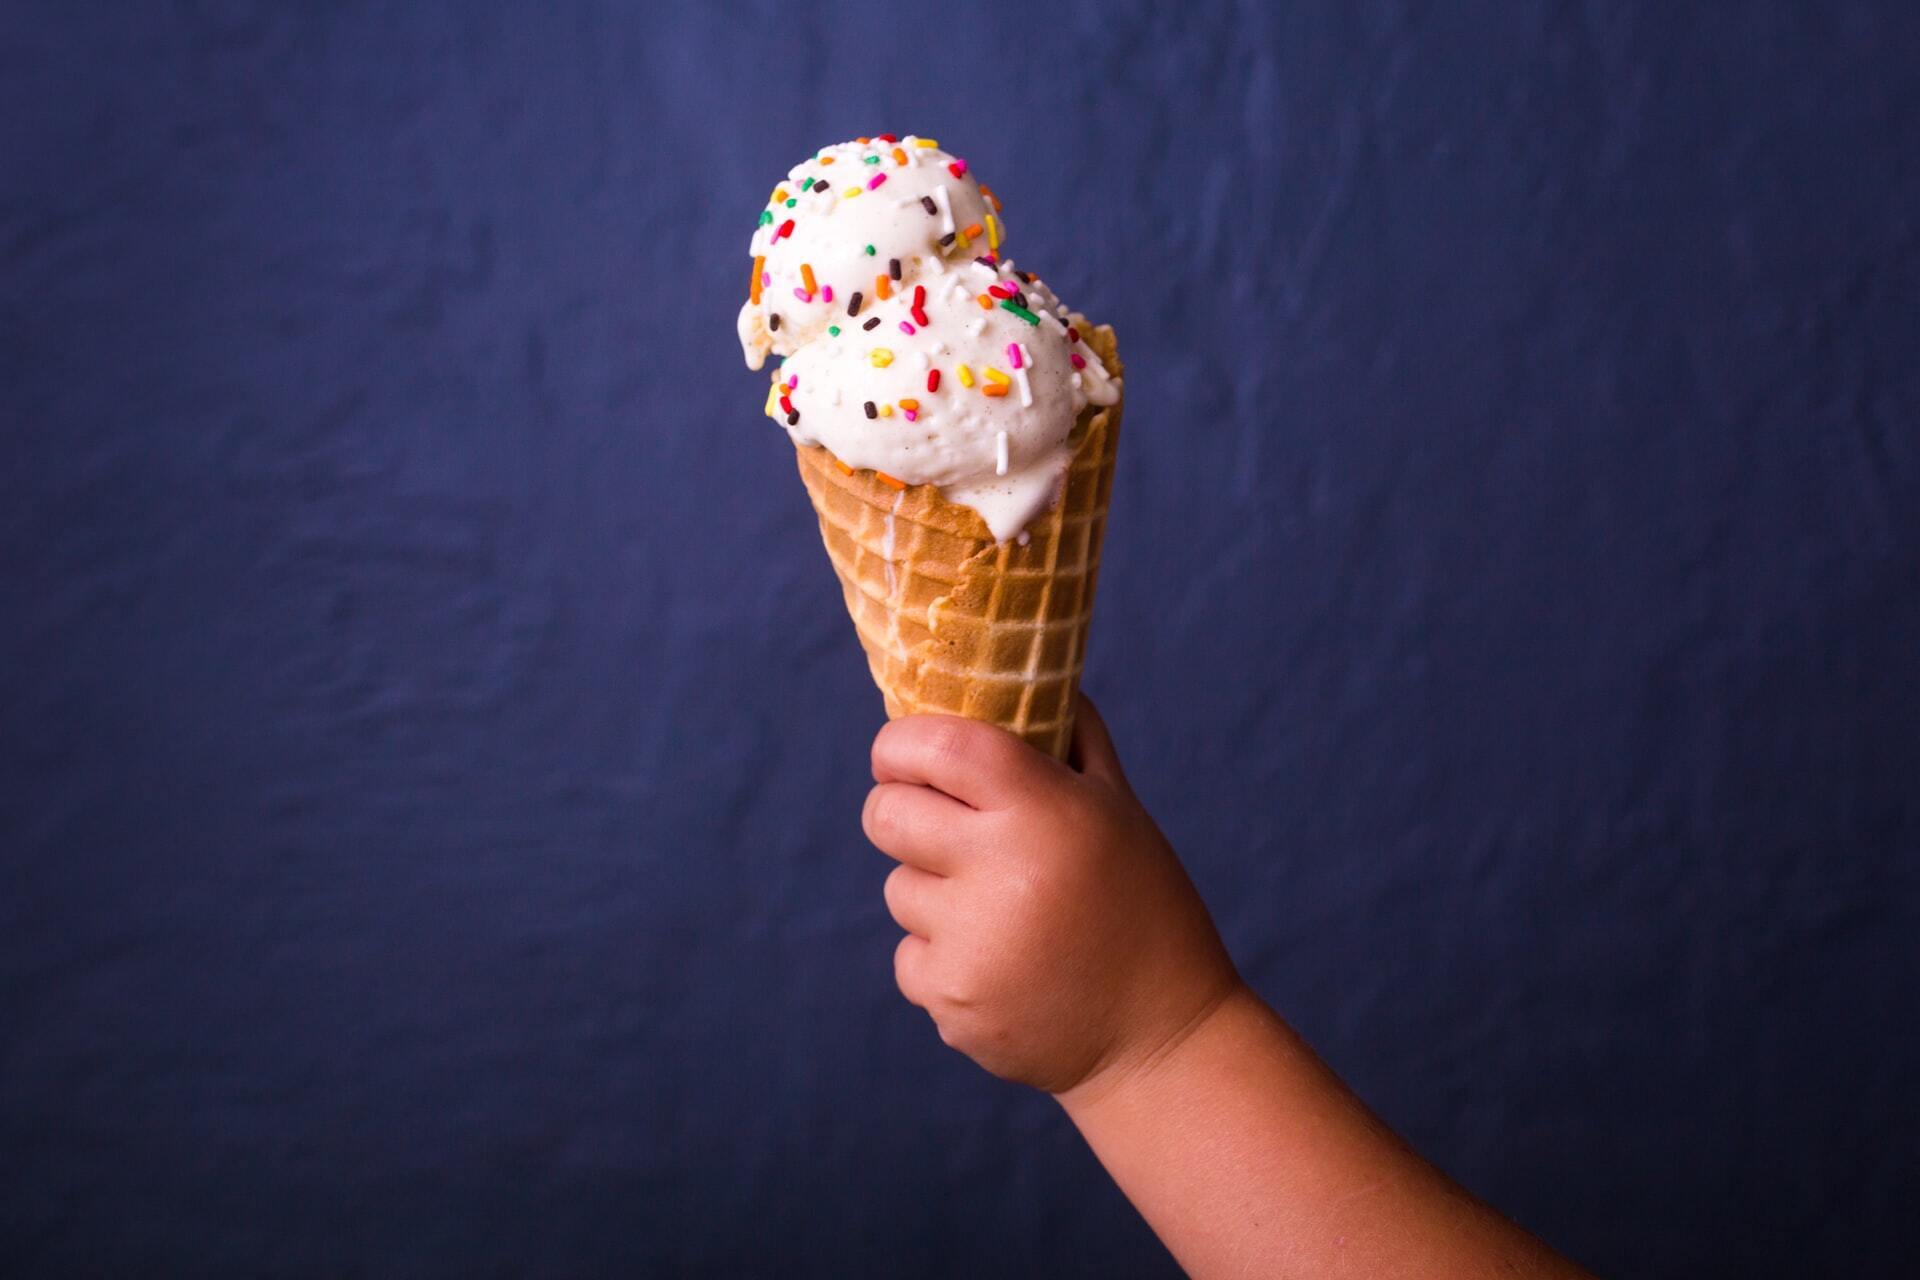 Перше класичне морозиво на основі молока з'явилося у 18 столітті у Франції